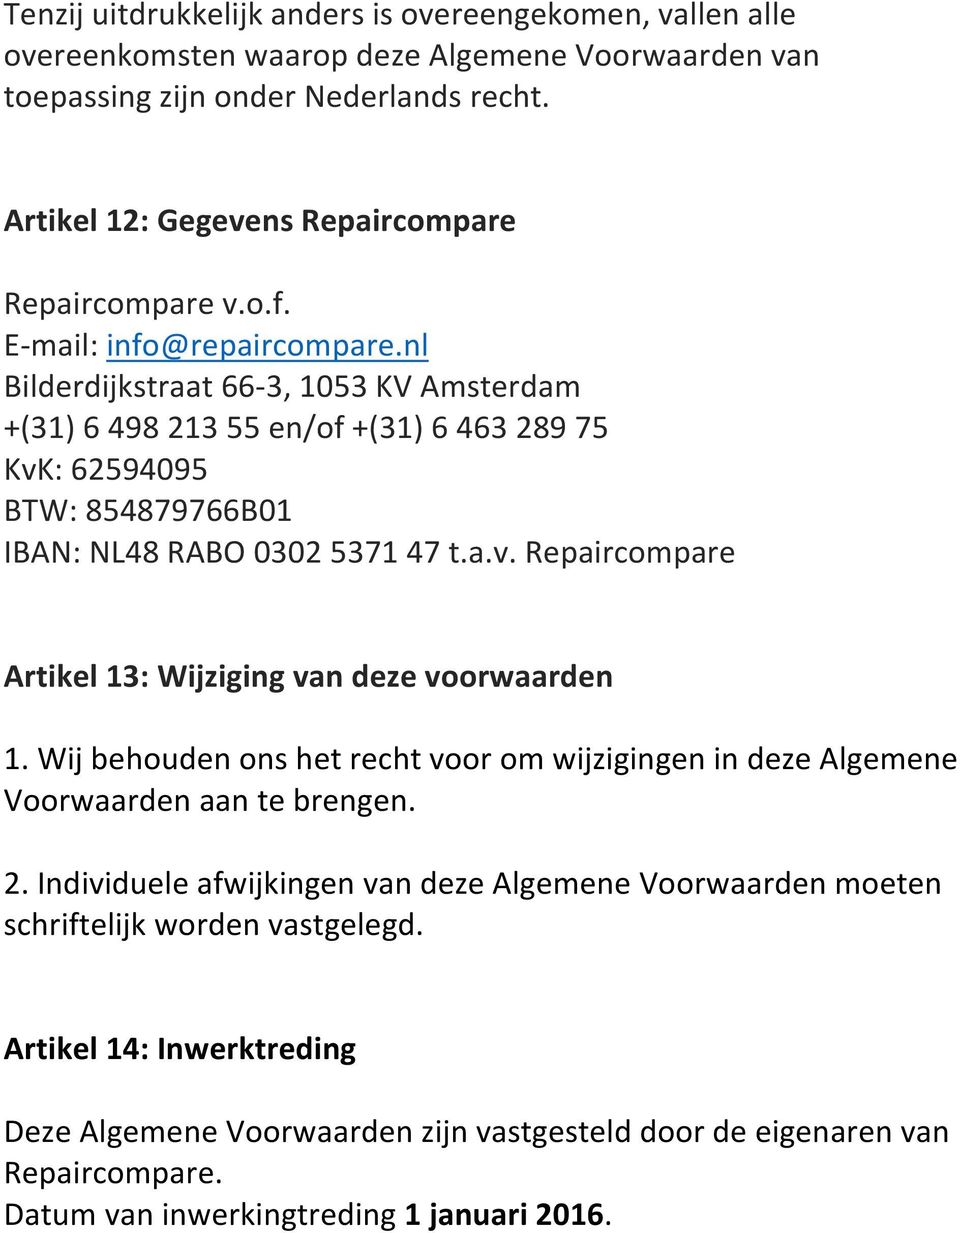 nl Bilderdijkstraat 66-3, 1053 KV Amsterdam +(31) 6 498 213 55 en/of +(31) 6 463 289 75 KvK: 62594095 BTW: 854879766B01 IBAN: NL48 RABO 0302 5371 47 t.a.v. Repaircompare Artikel 13: Wijziging van deze voorwaarden 1.